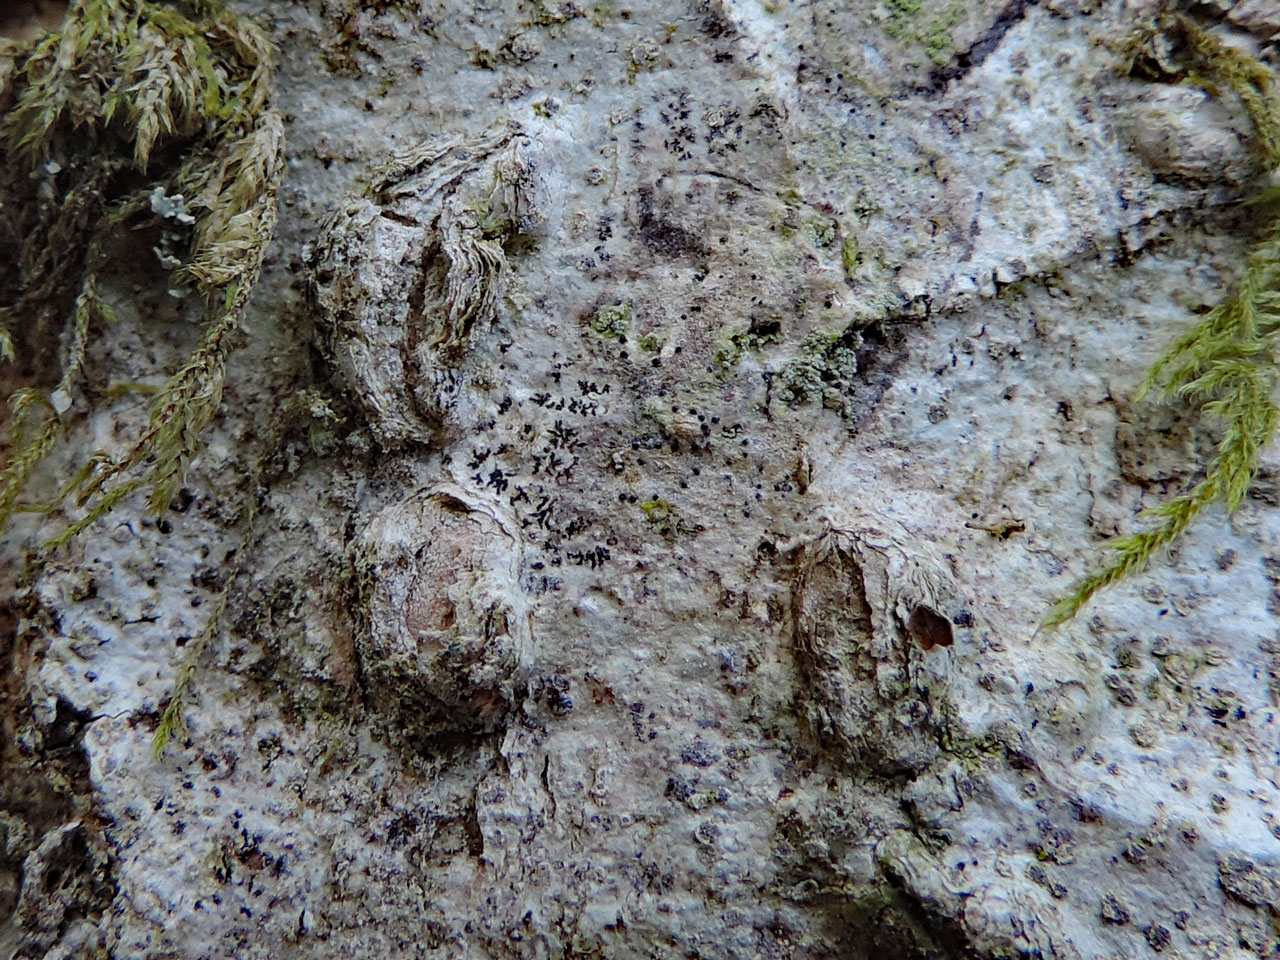 Arthonia invadens, Schizotrema quercicola, Nannau